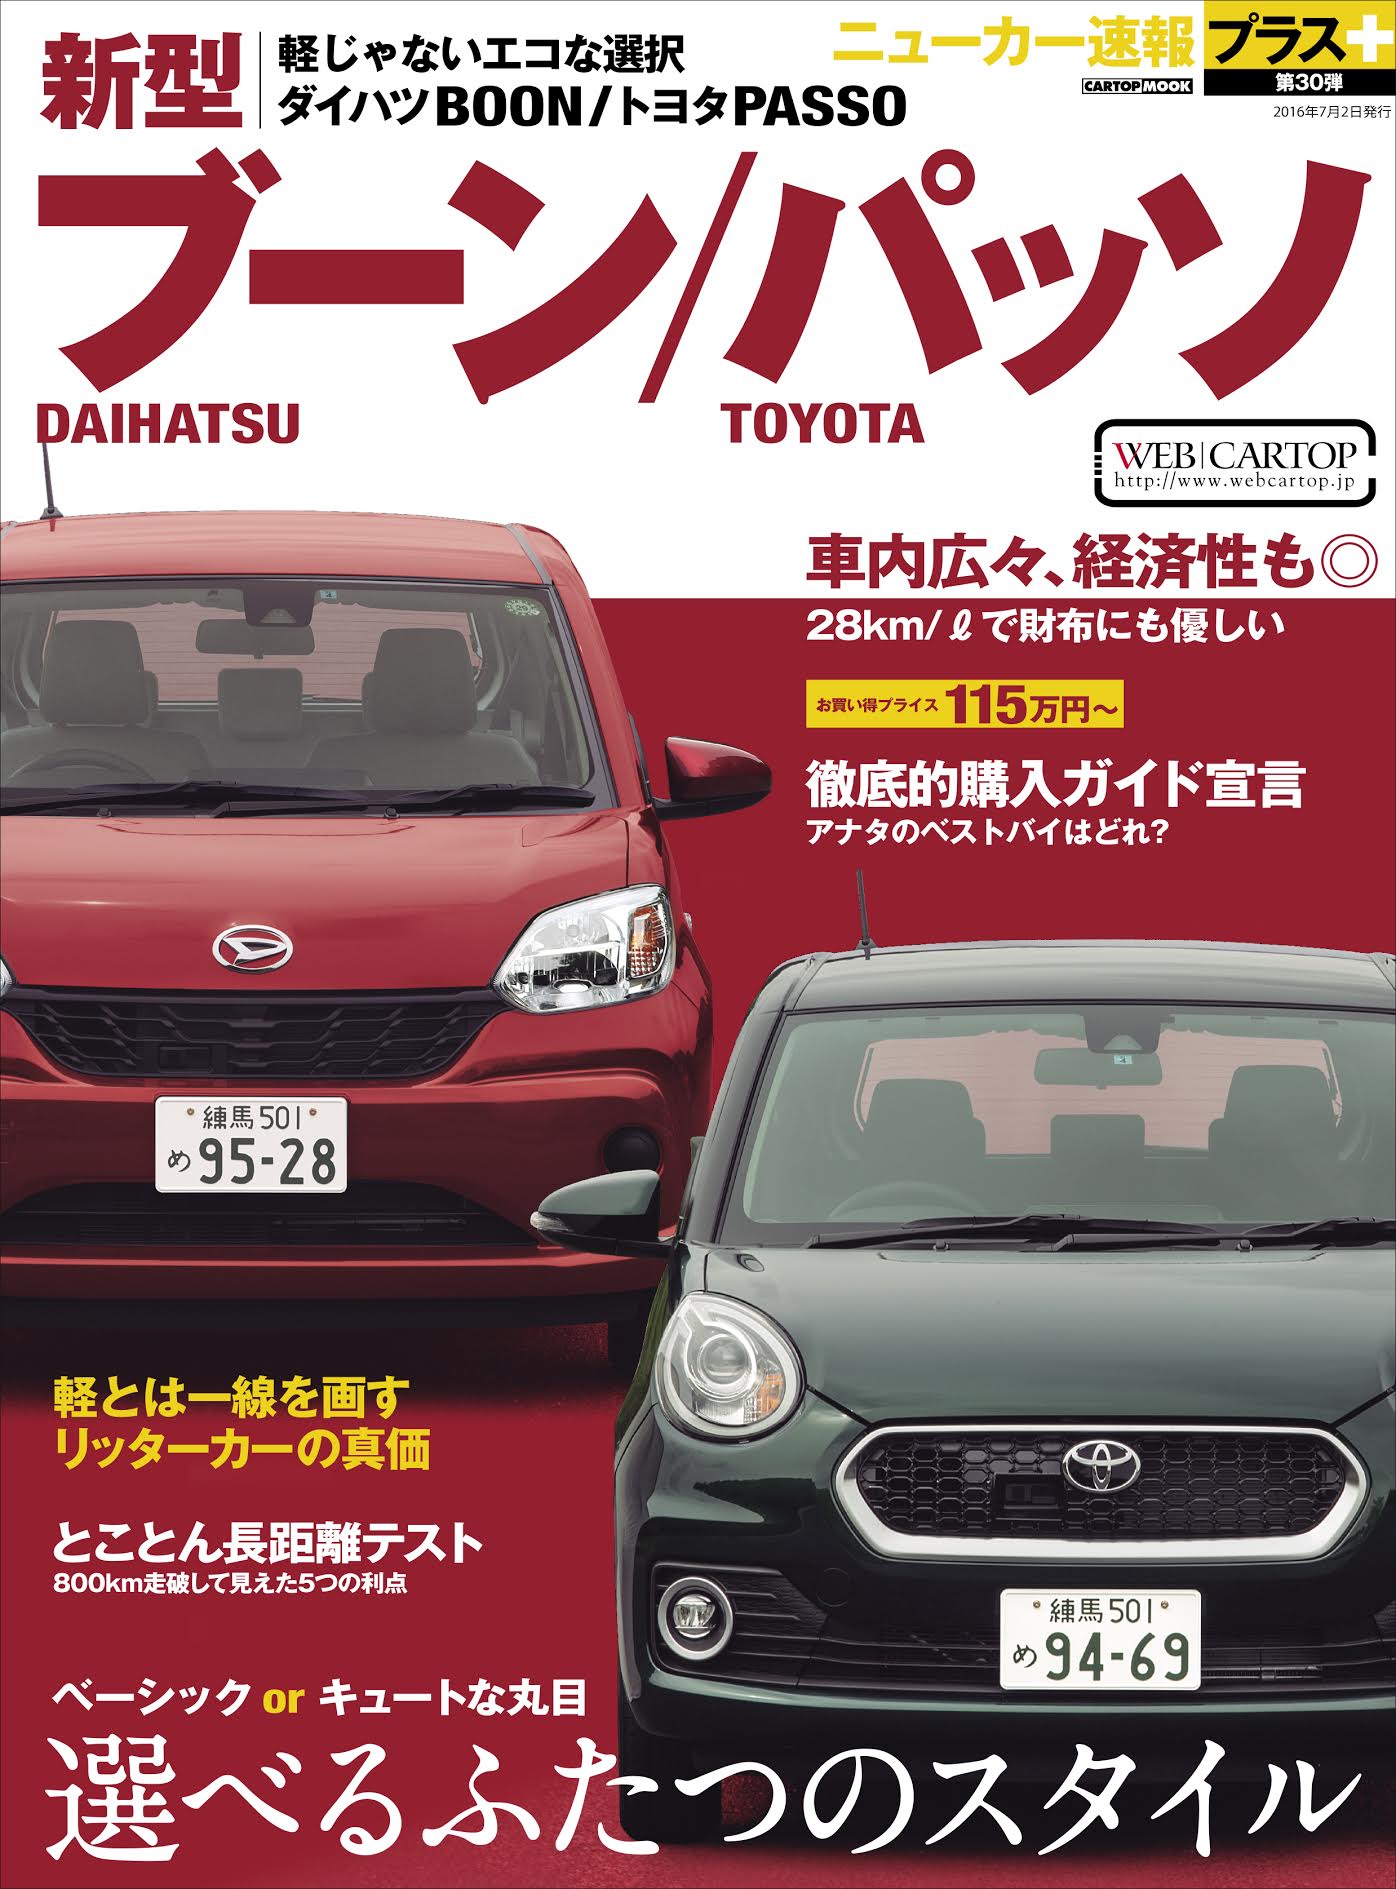 ニューカー速報プラス第30弾 新型daihatsuブーン Toyotaパッソ 株式会社交通タイムス社